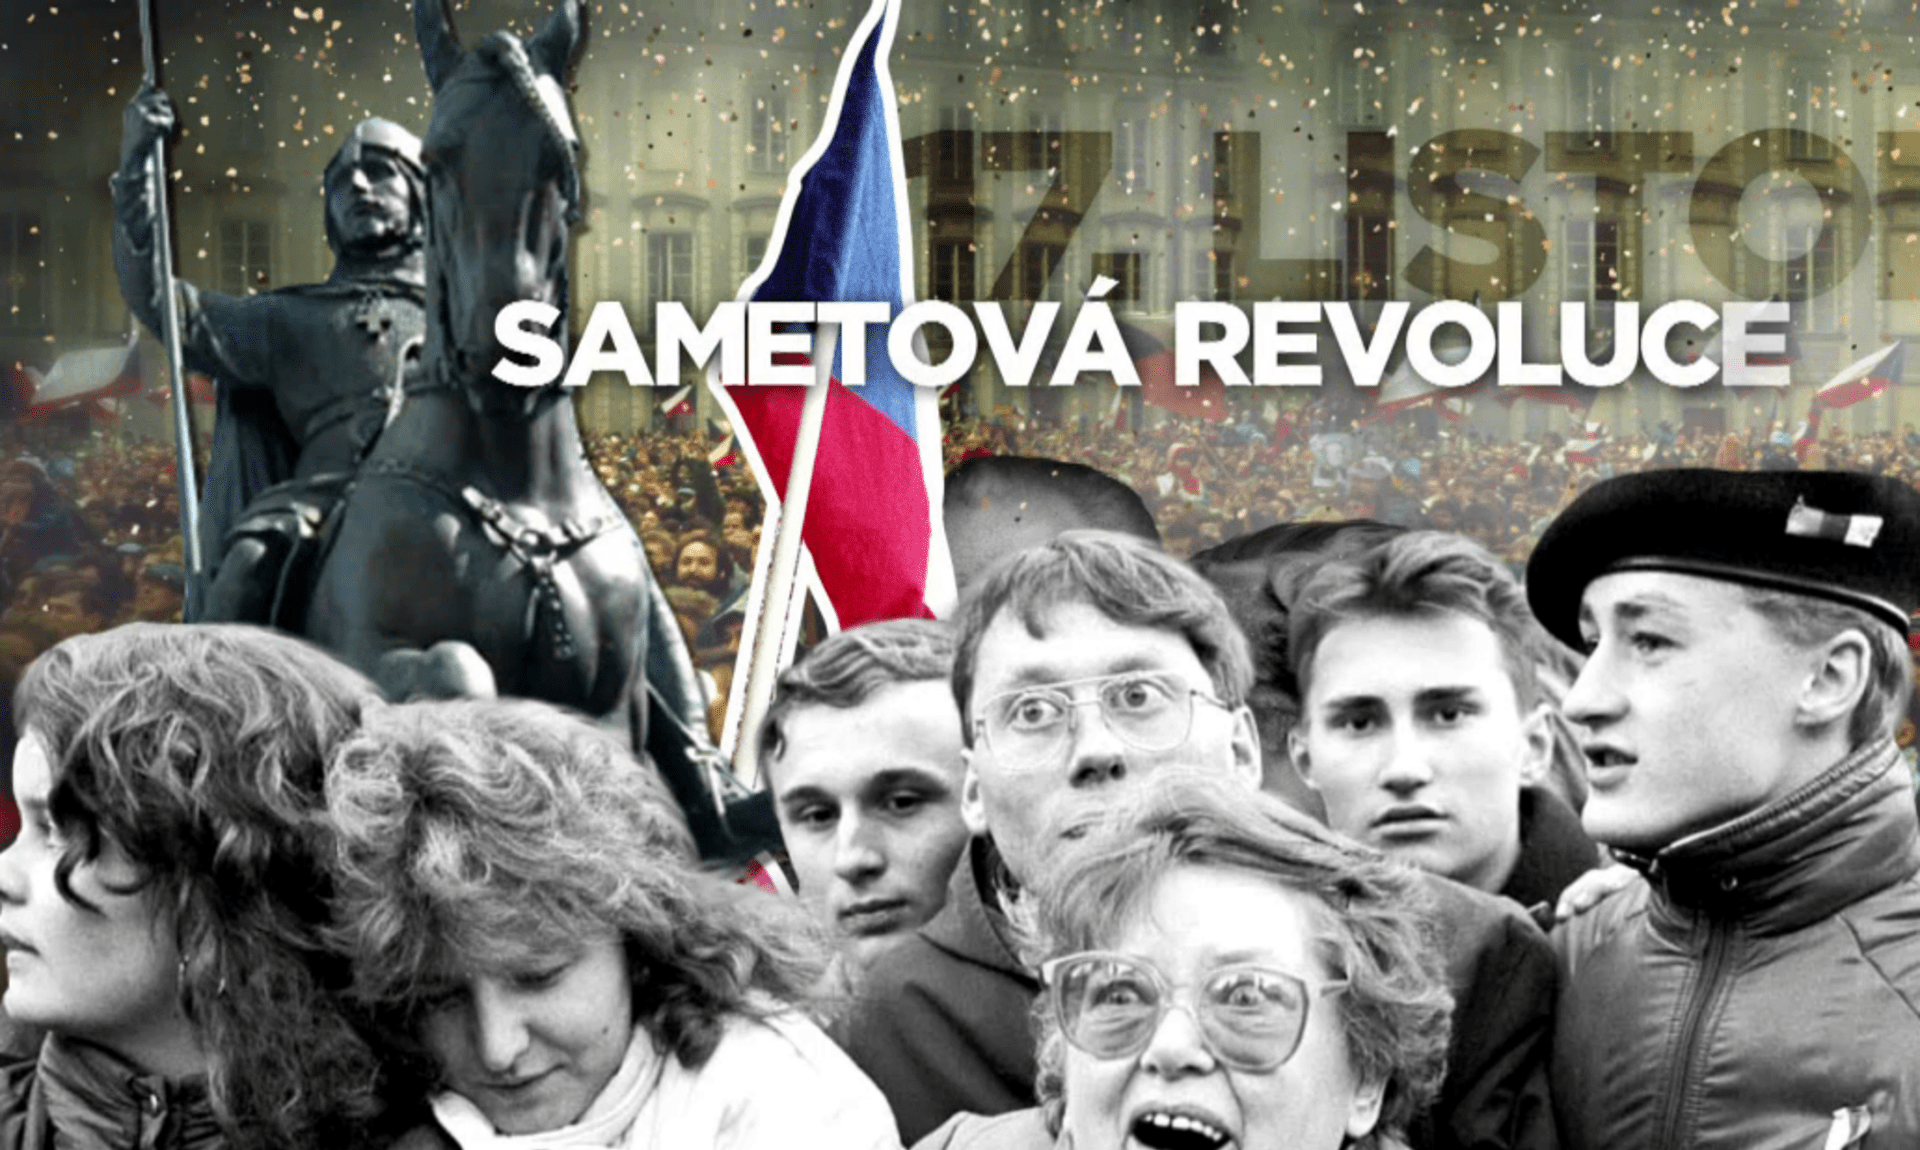 Vloni v listopadu jsme vzpomínali hlavně na Sametovou revoluci